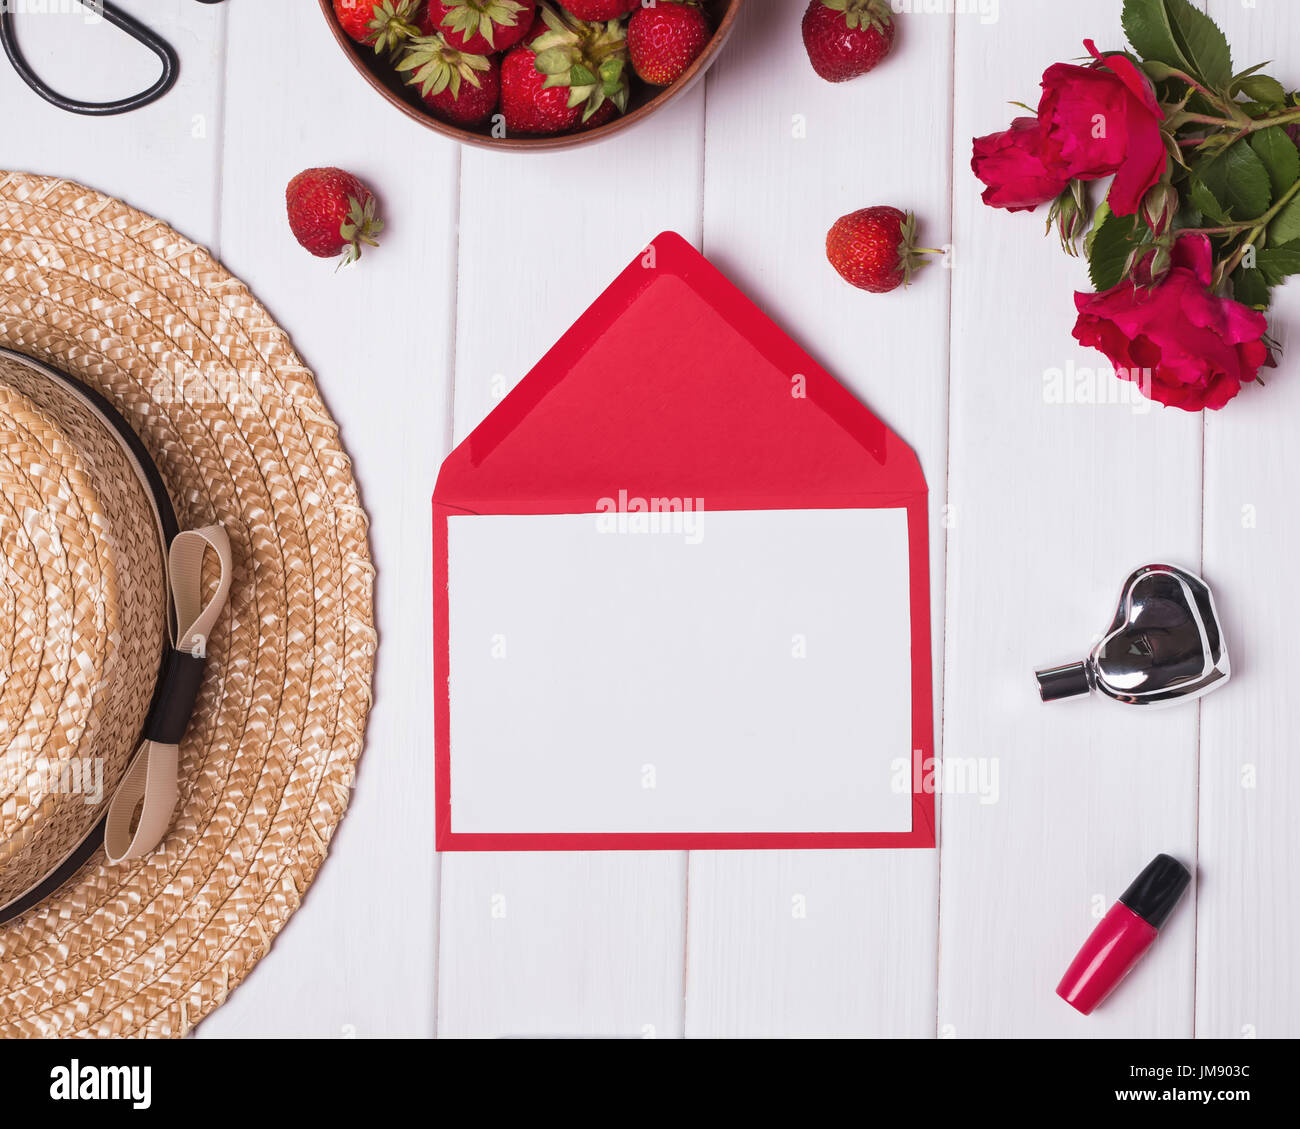 Leeres Papier, Hut, rote Rosen und Erdbeeren auf weißem Hintergrund aus Holz. Sommer-Konzept Stockfoto